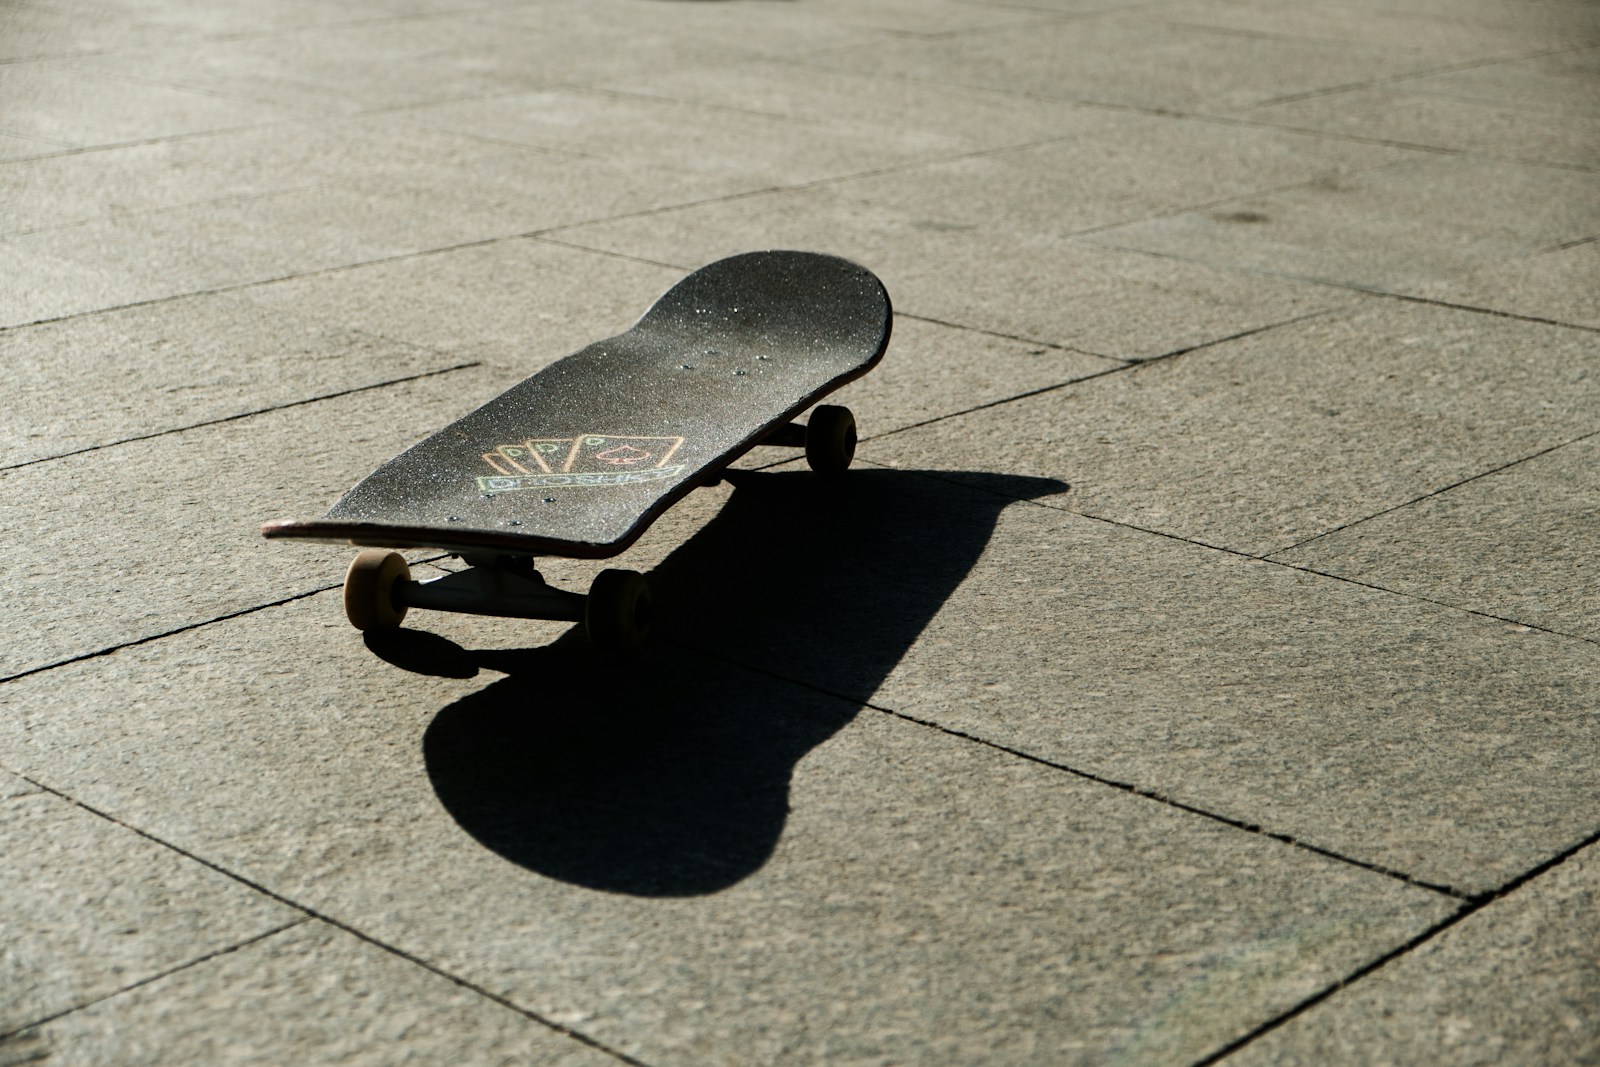 Les Secrets des Grips de Skateboard: Types, Styles et Utilités